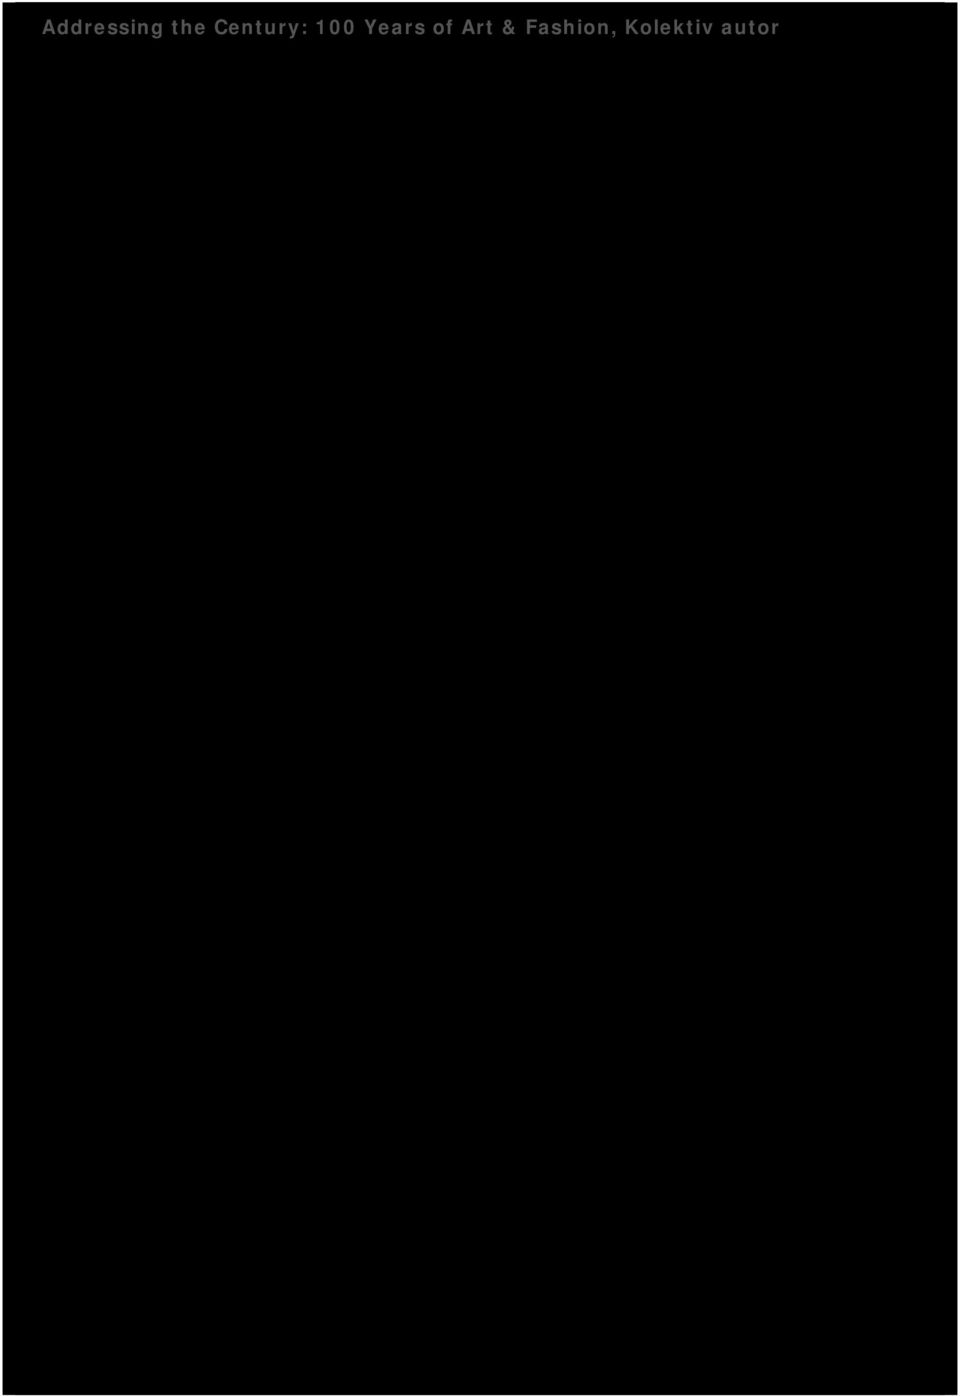 , Brunclík Pavel, Kolektiv autorů Nakladatelství: Skenavel; Praha Rok vydání: 2011 výtvarné umění Počet stran: 978-80-254-9511-7 Inventární číslo: V-2011 Ai Weiwei, Smith Karen, Obrist Hans